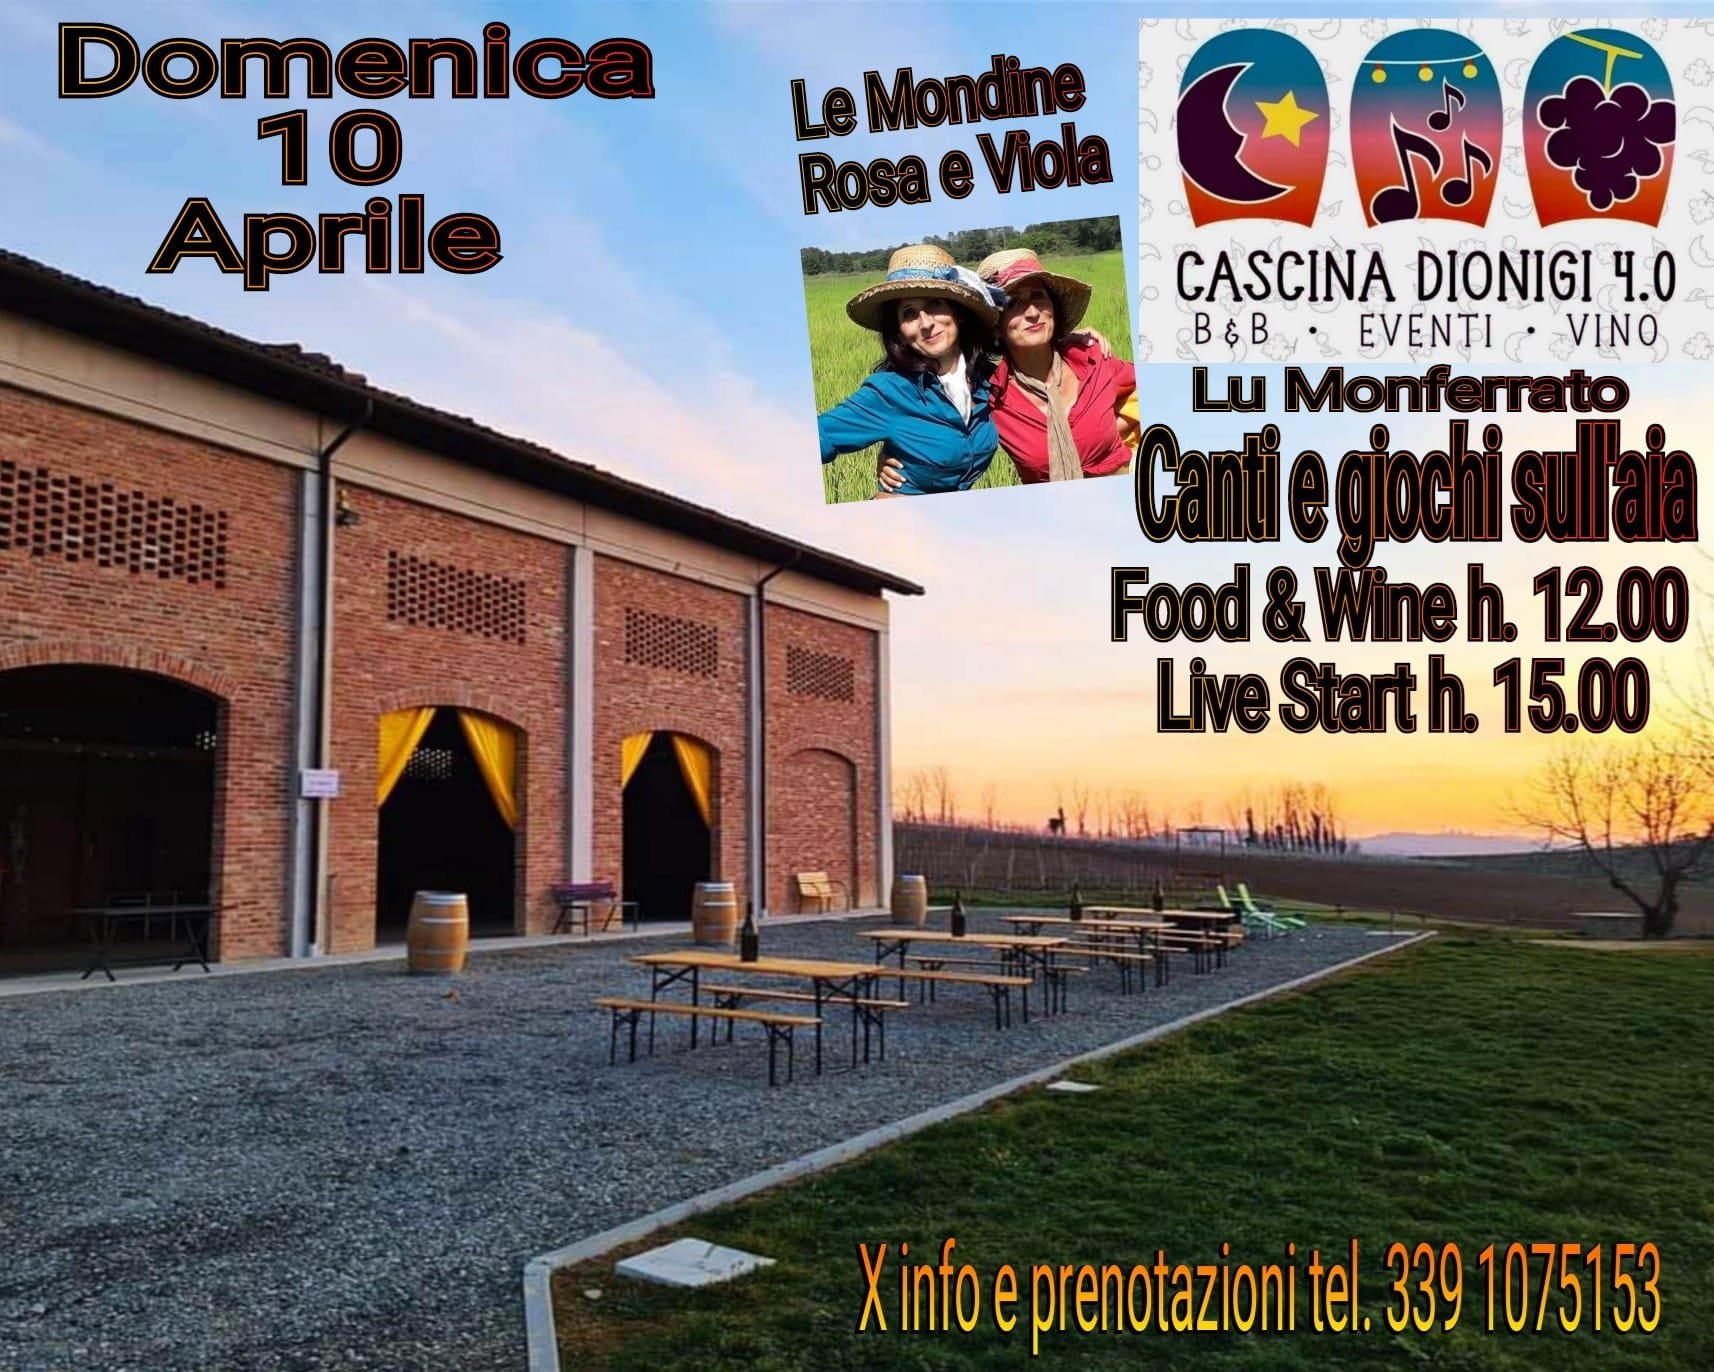 Domenica 10 aprile canti e giochi sull’aia a Cascina Dionigi 4.0